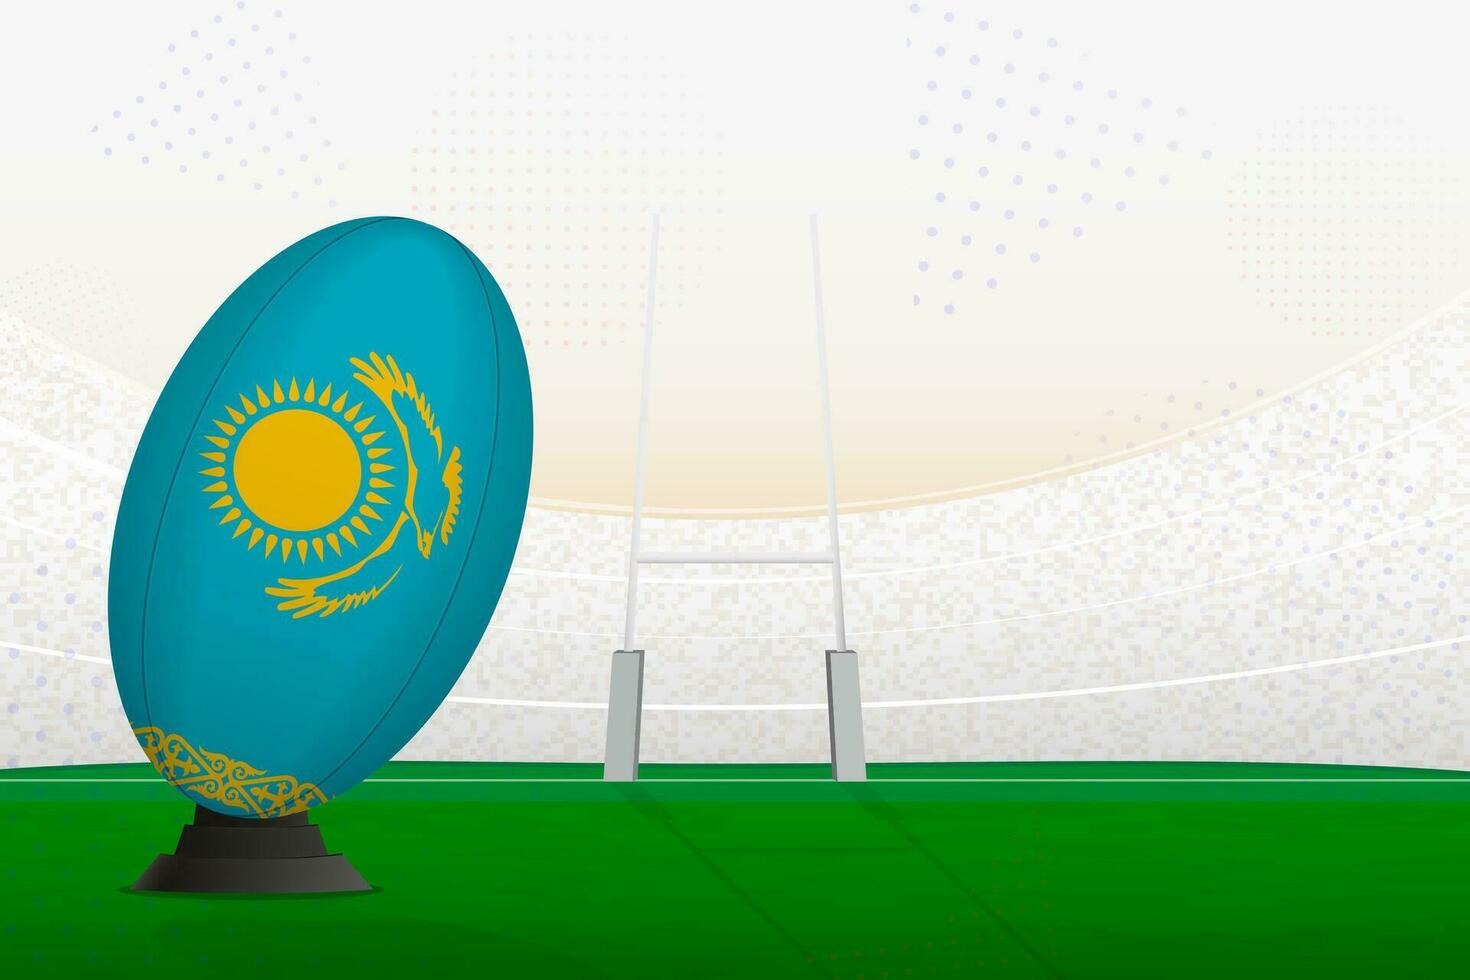 Kazajstán nacional equipo rugby pelota en rugby estadio y objetivo publicaciones, preparando para un multa o gratis patada. vector